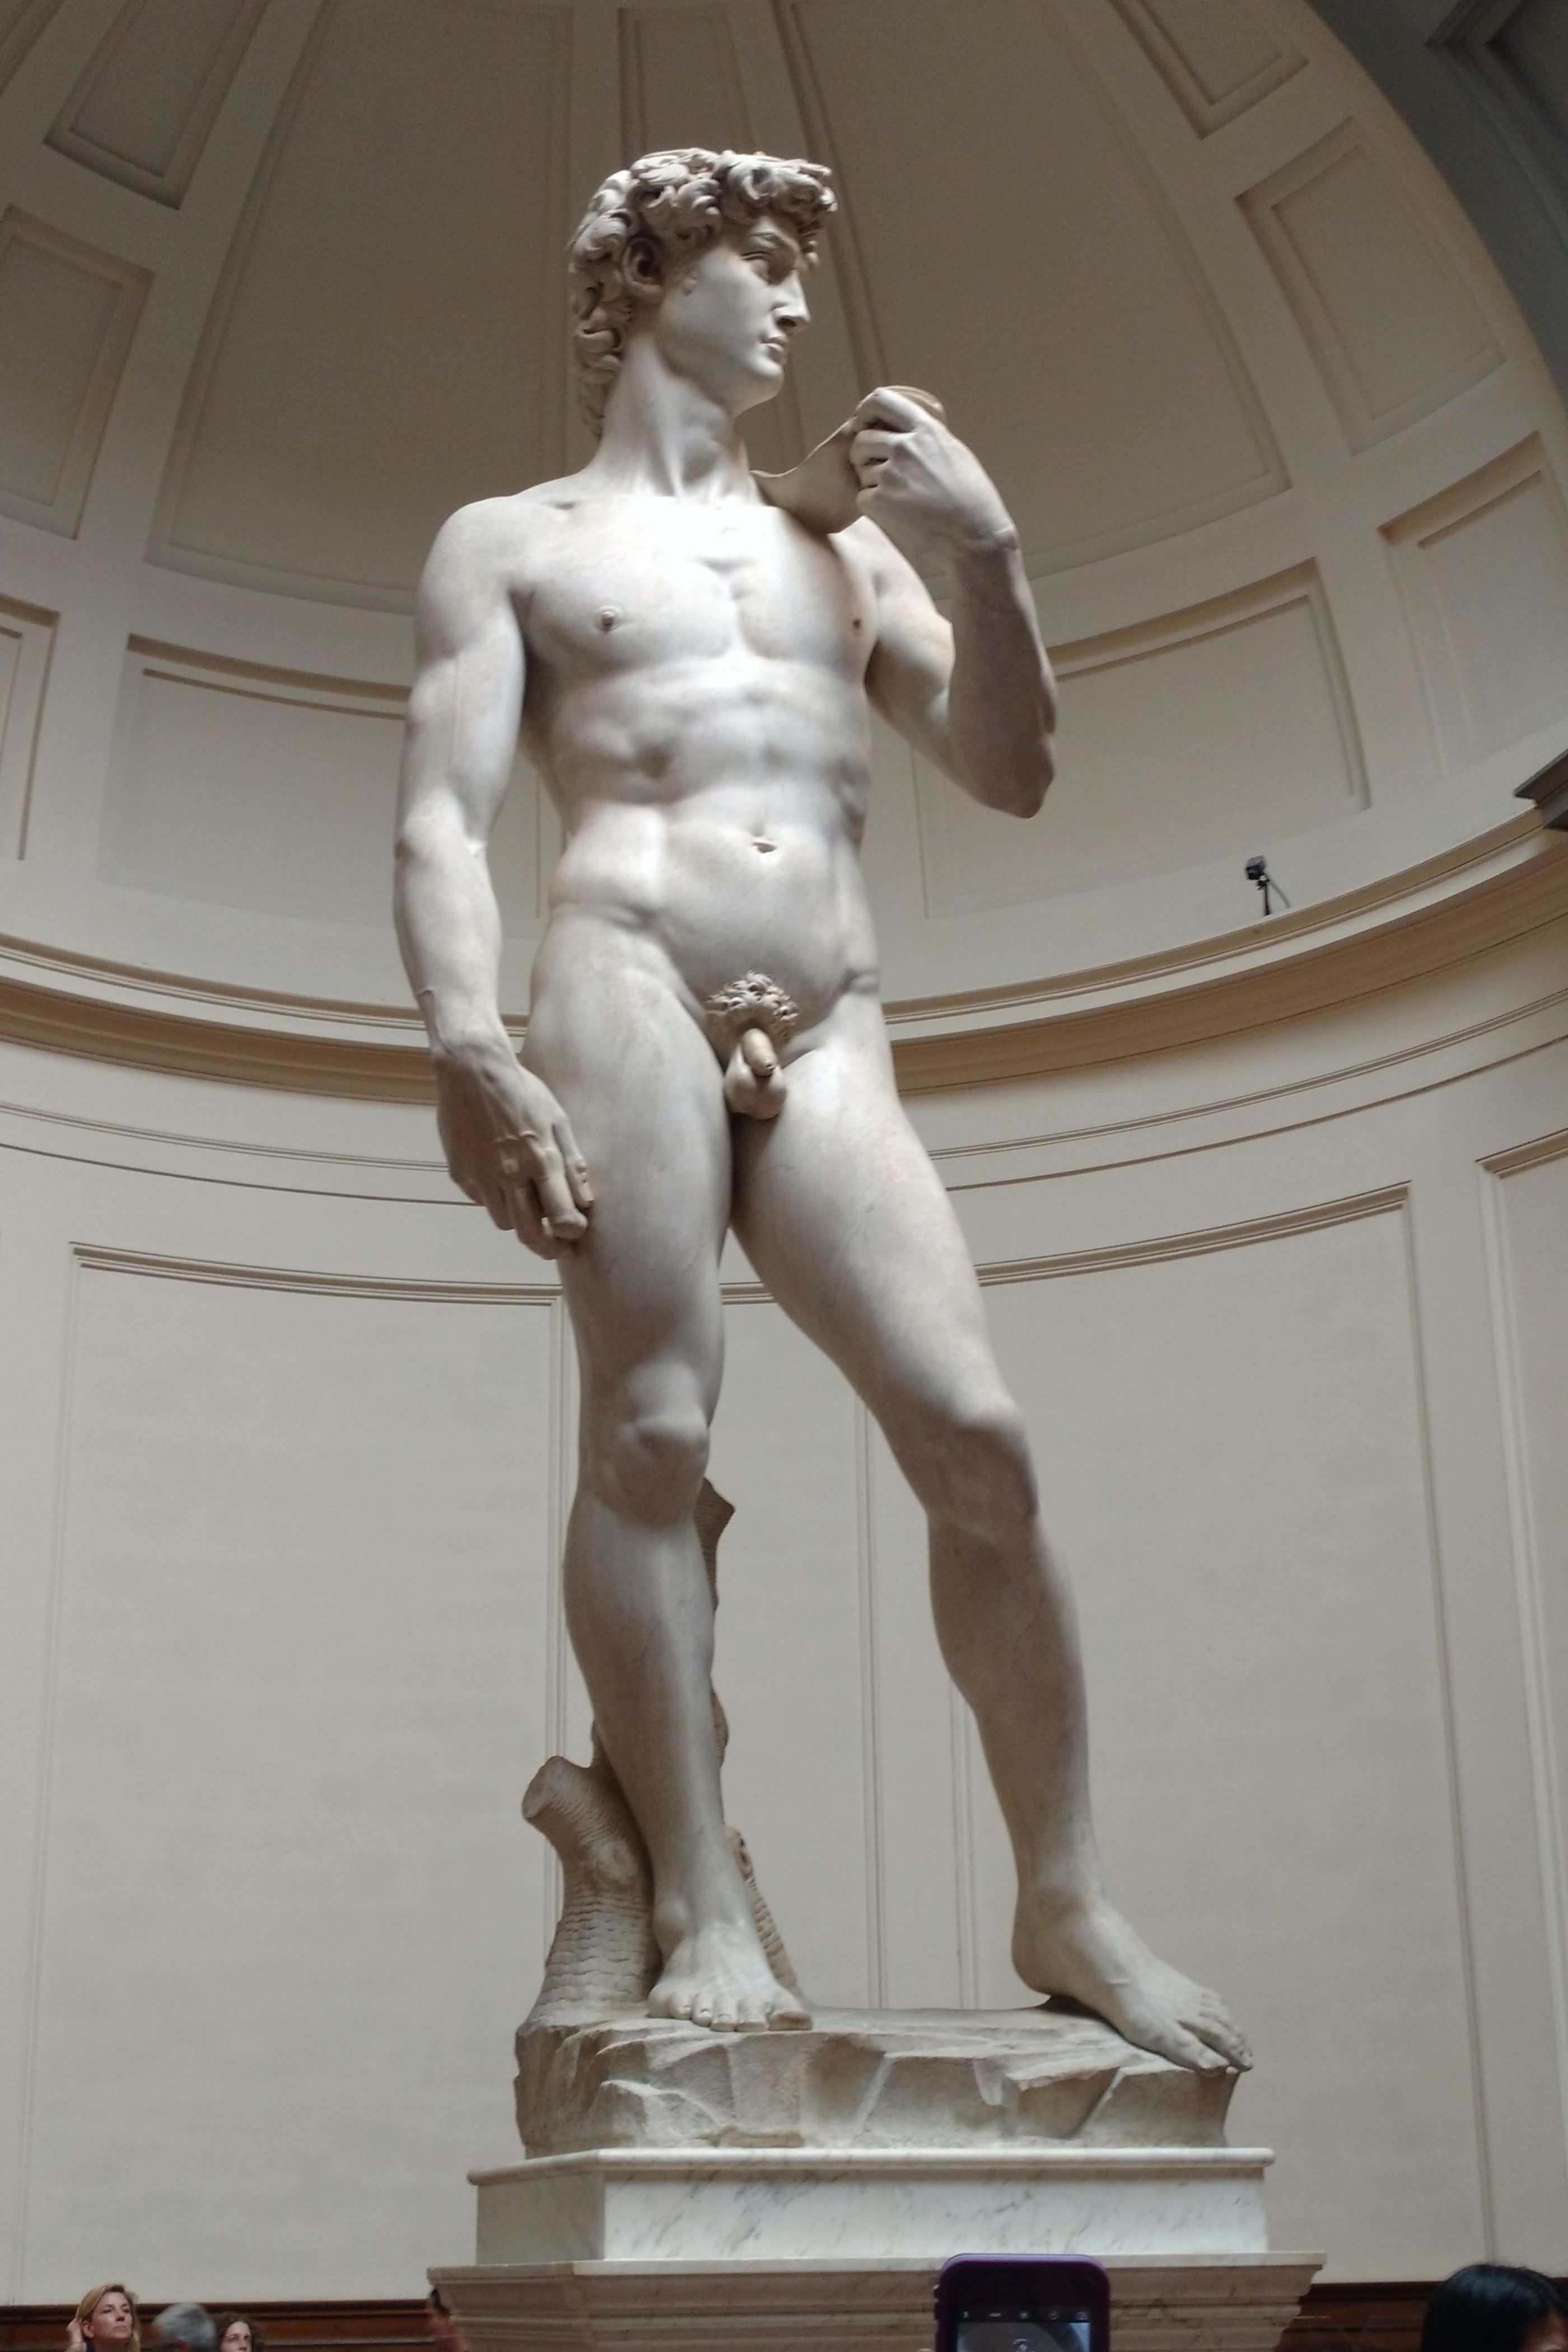 Statue of David by Leonardo da Vinci, Galleria dell'Accademia